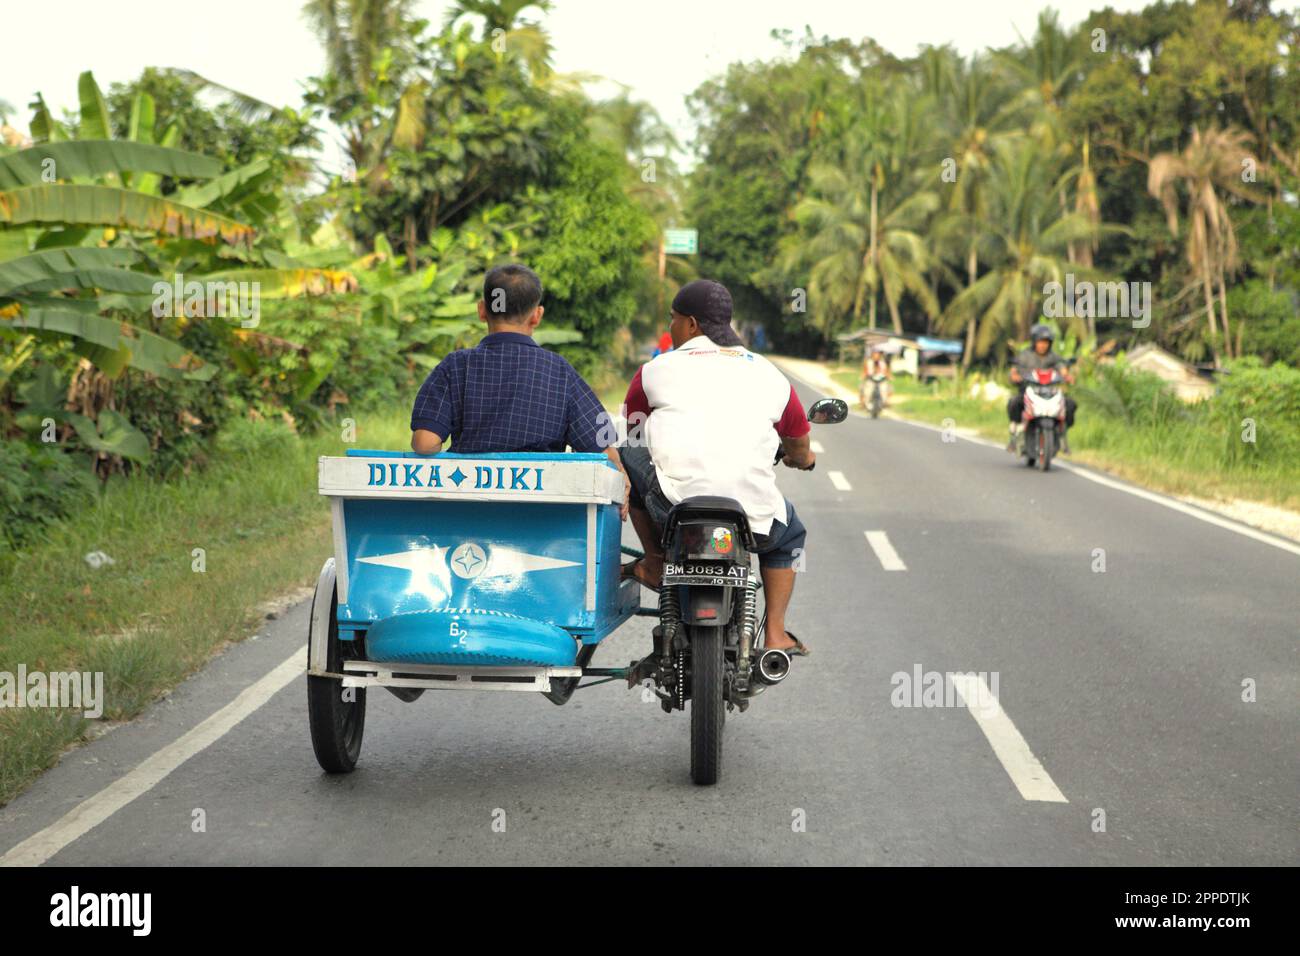 Un automobiliste transporte un passager sur une moto équipée d'un side-car (tricycle motorisé) alors qu'il roule sur une route à la périphérie de Pekanbaru à Riau, en Indonésie. Banque D'Images